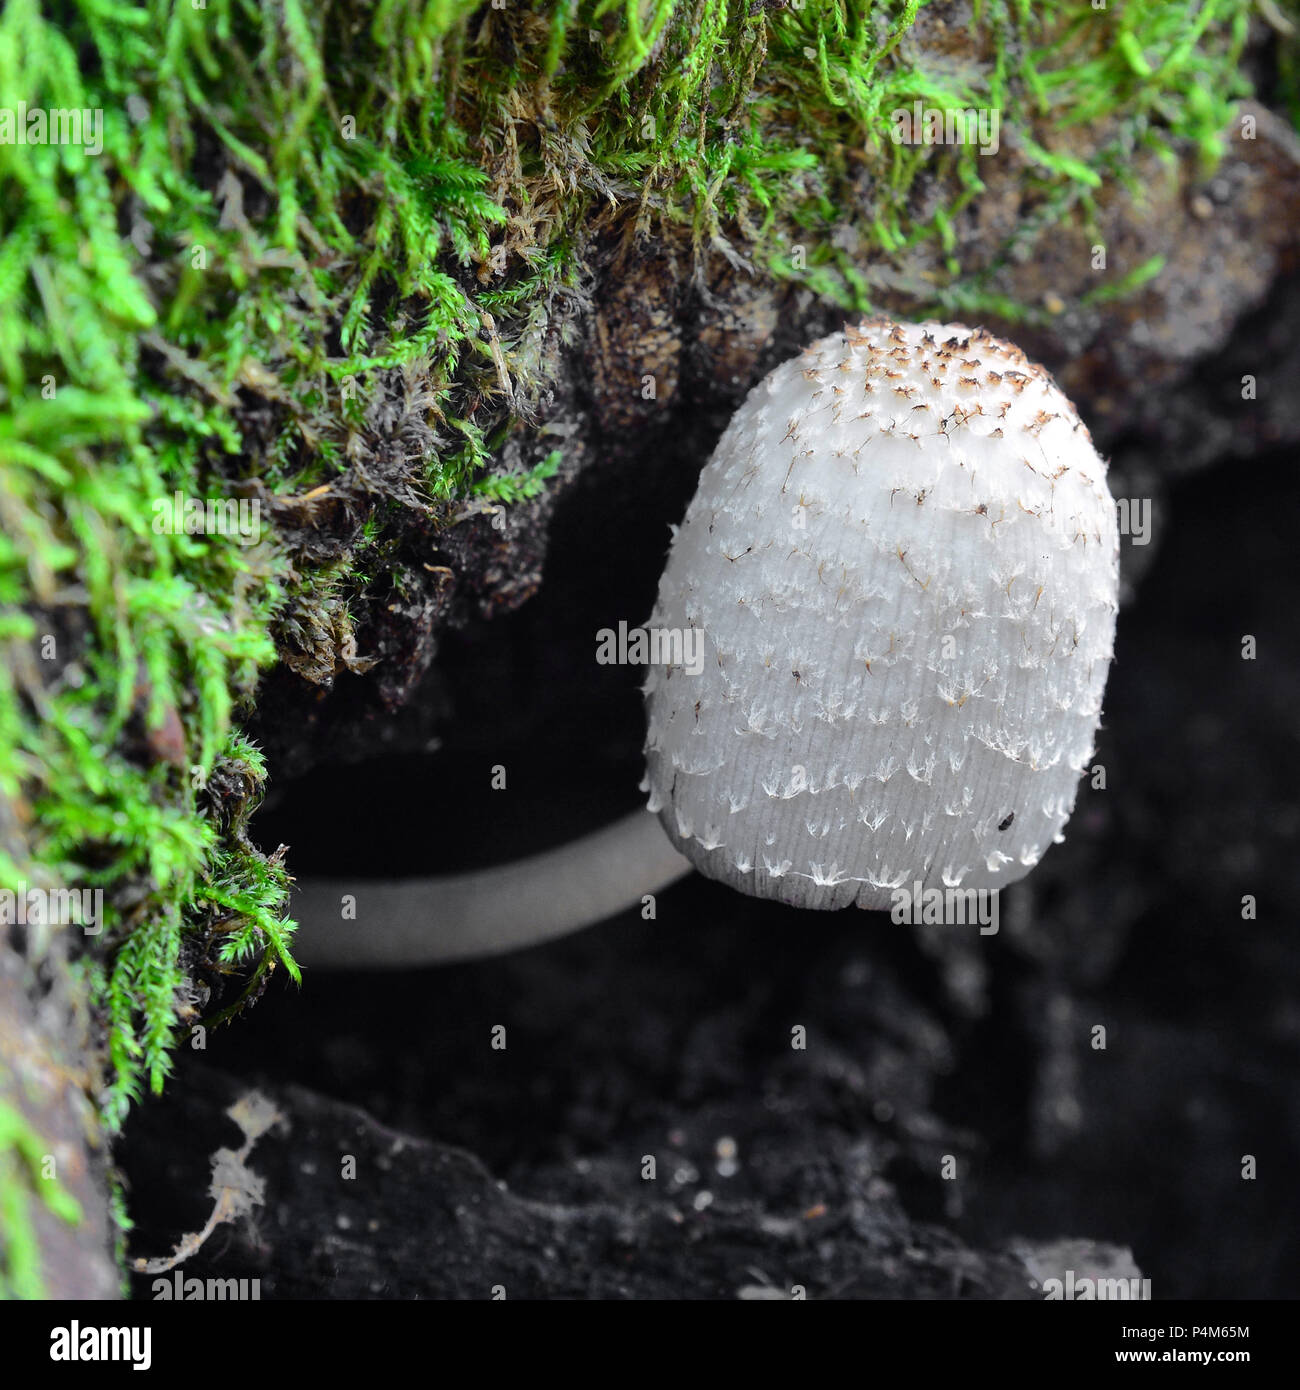 coprinus comatus mushroom on the ground Stock Photo